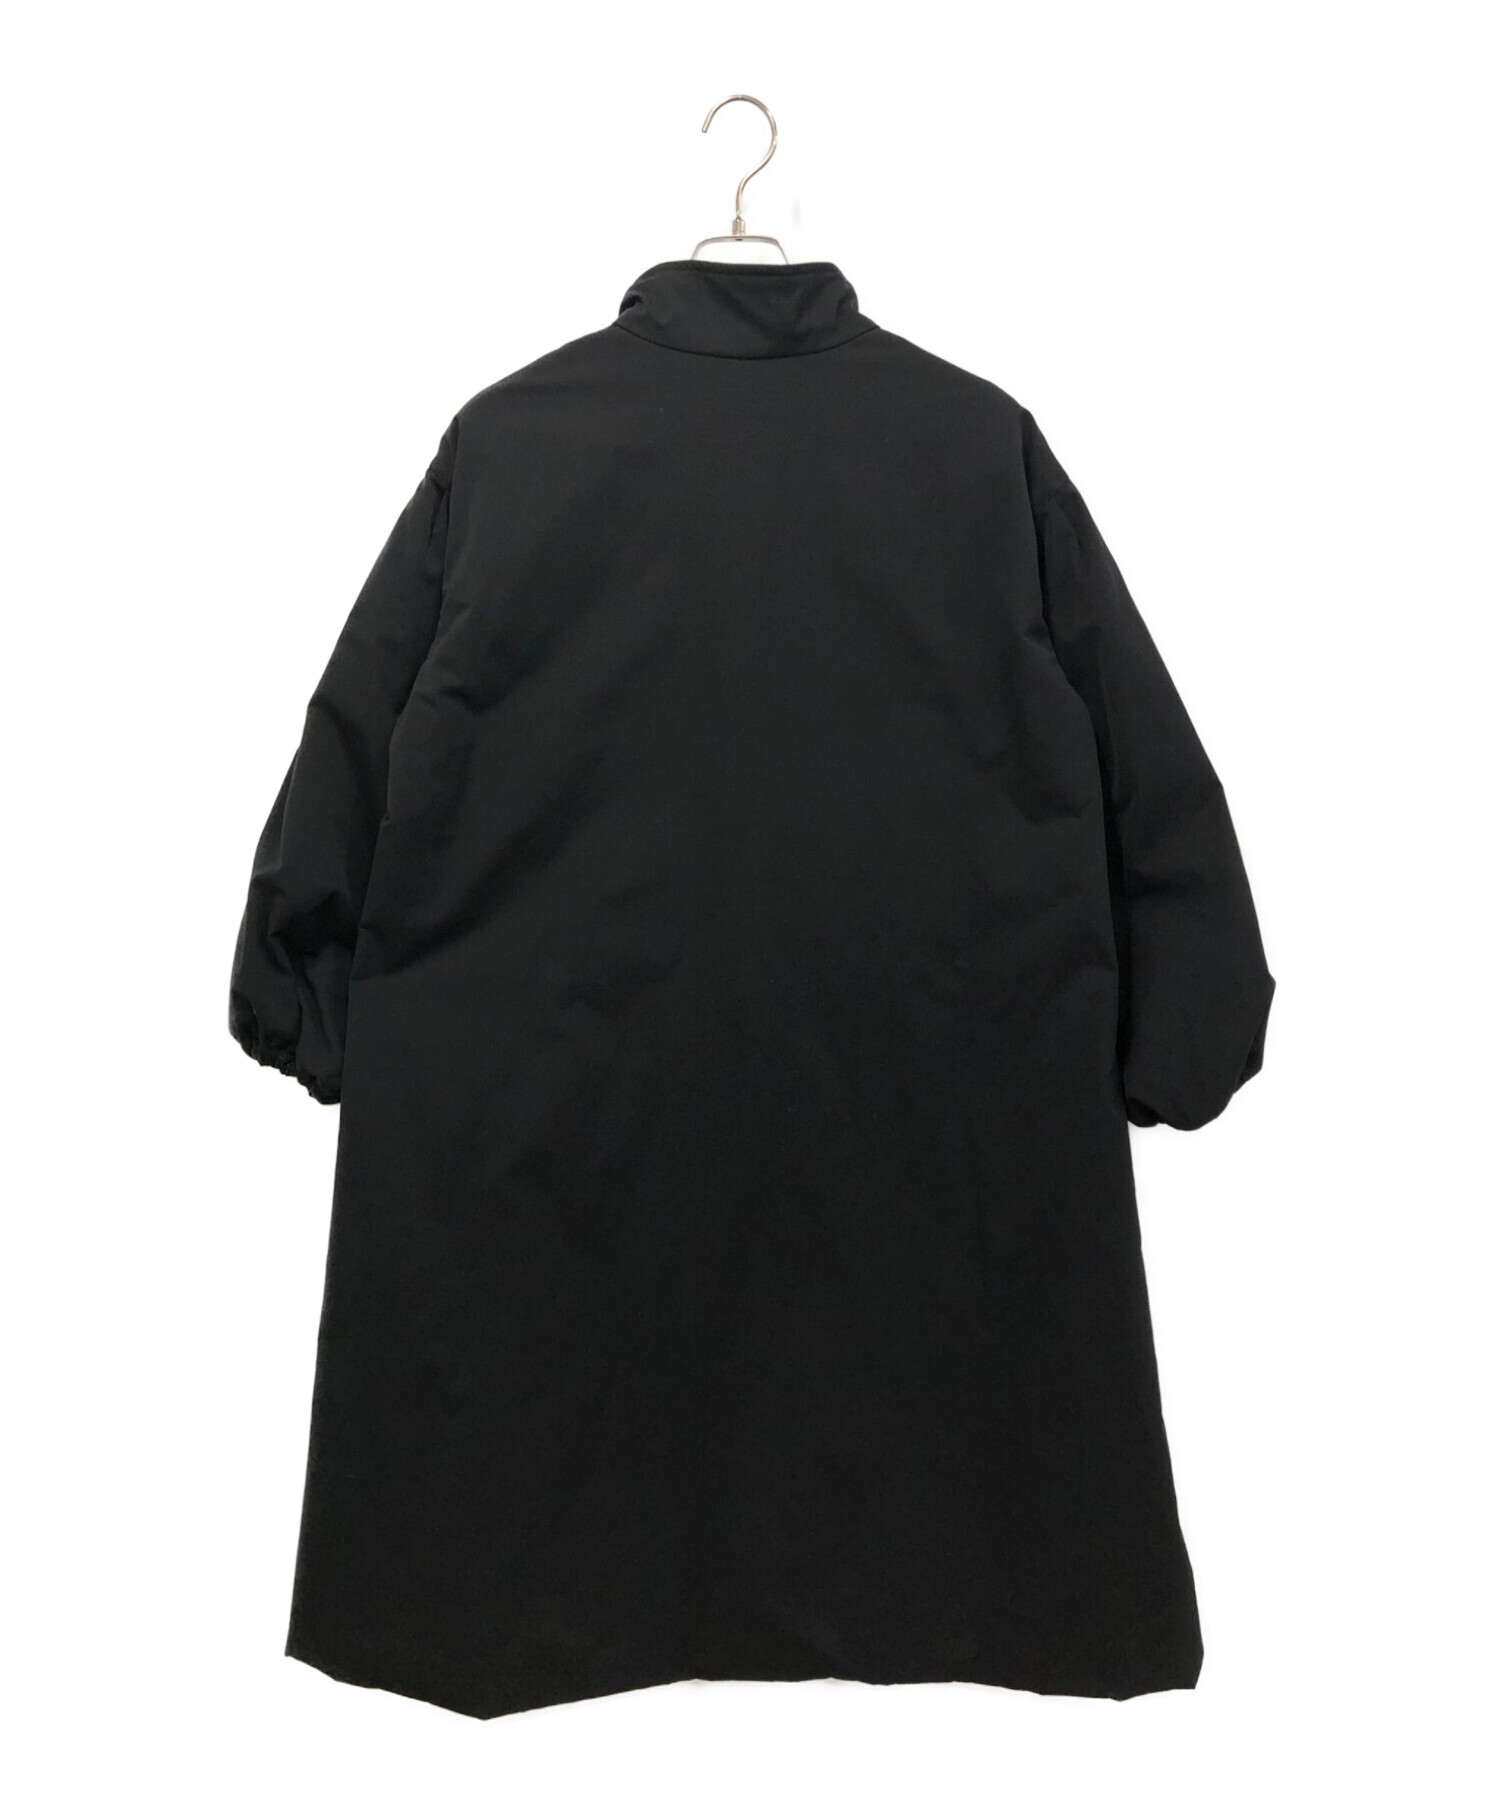 新品タグ付Spick and Span 中綿袖ボリュームコート丈も長めで暖かく着れます